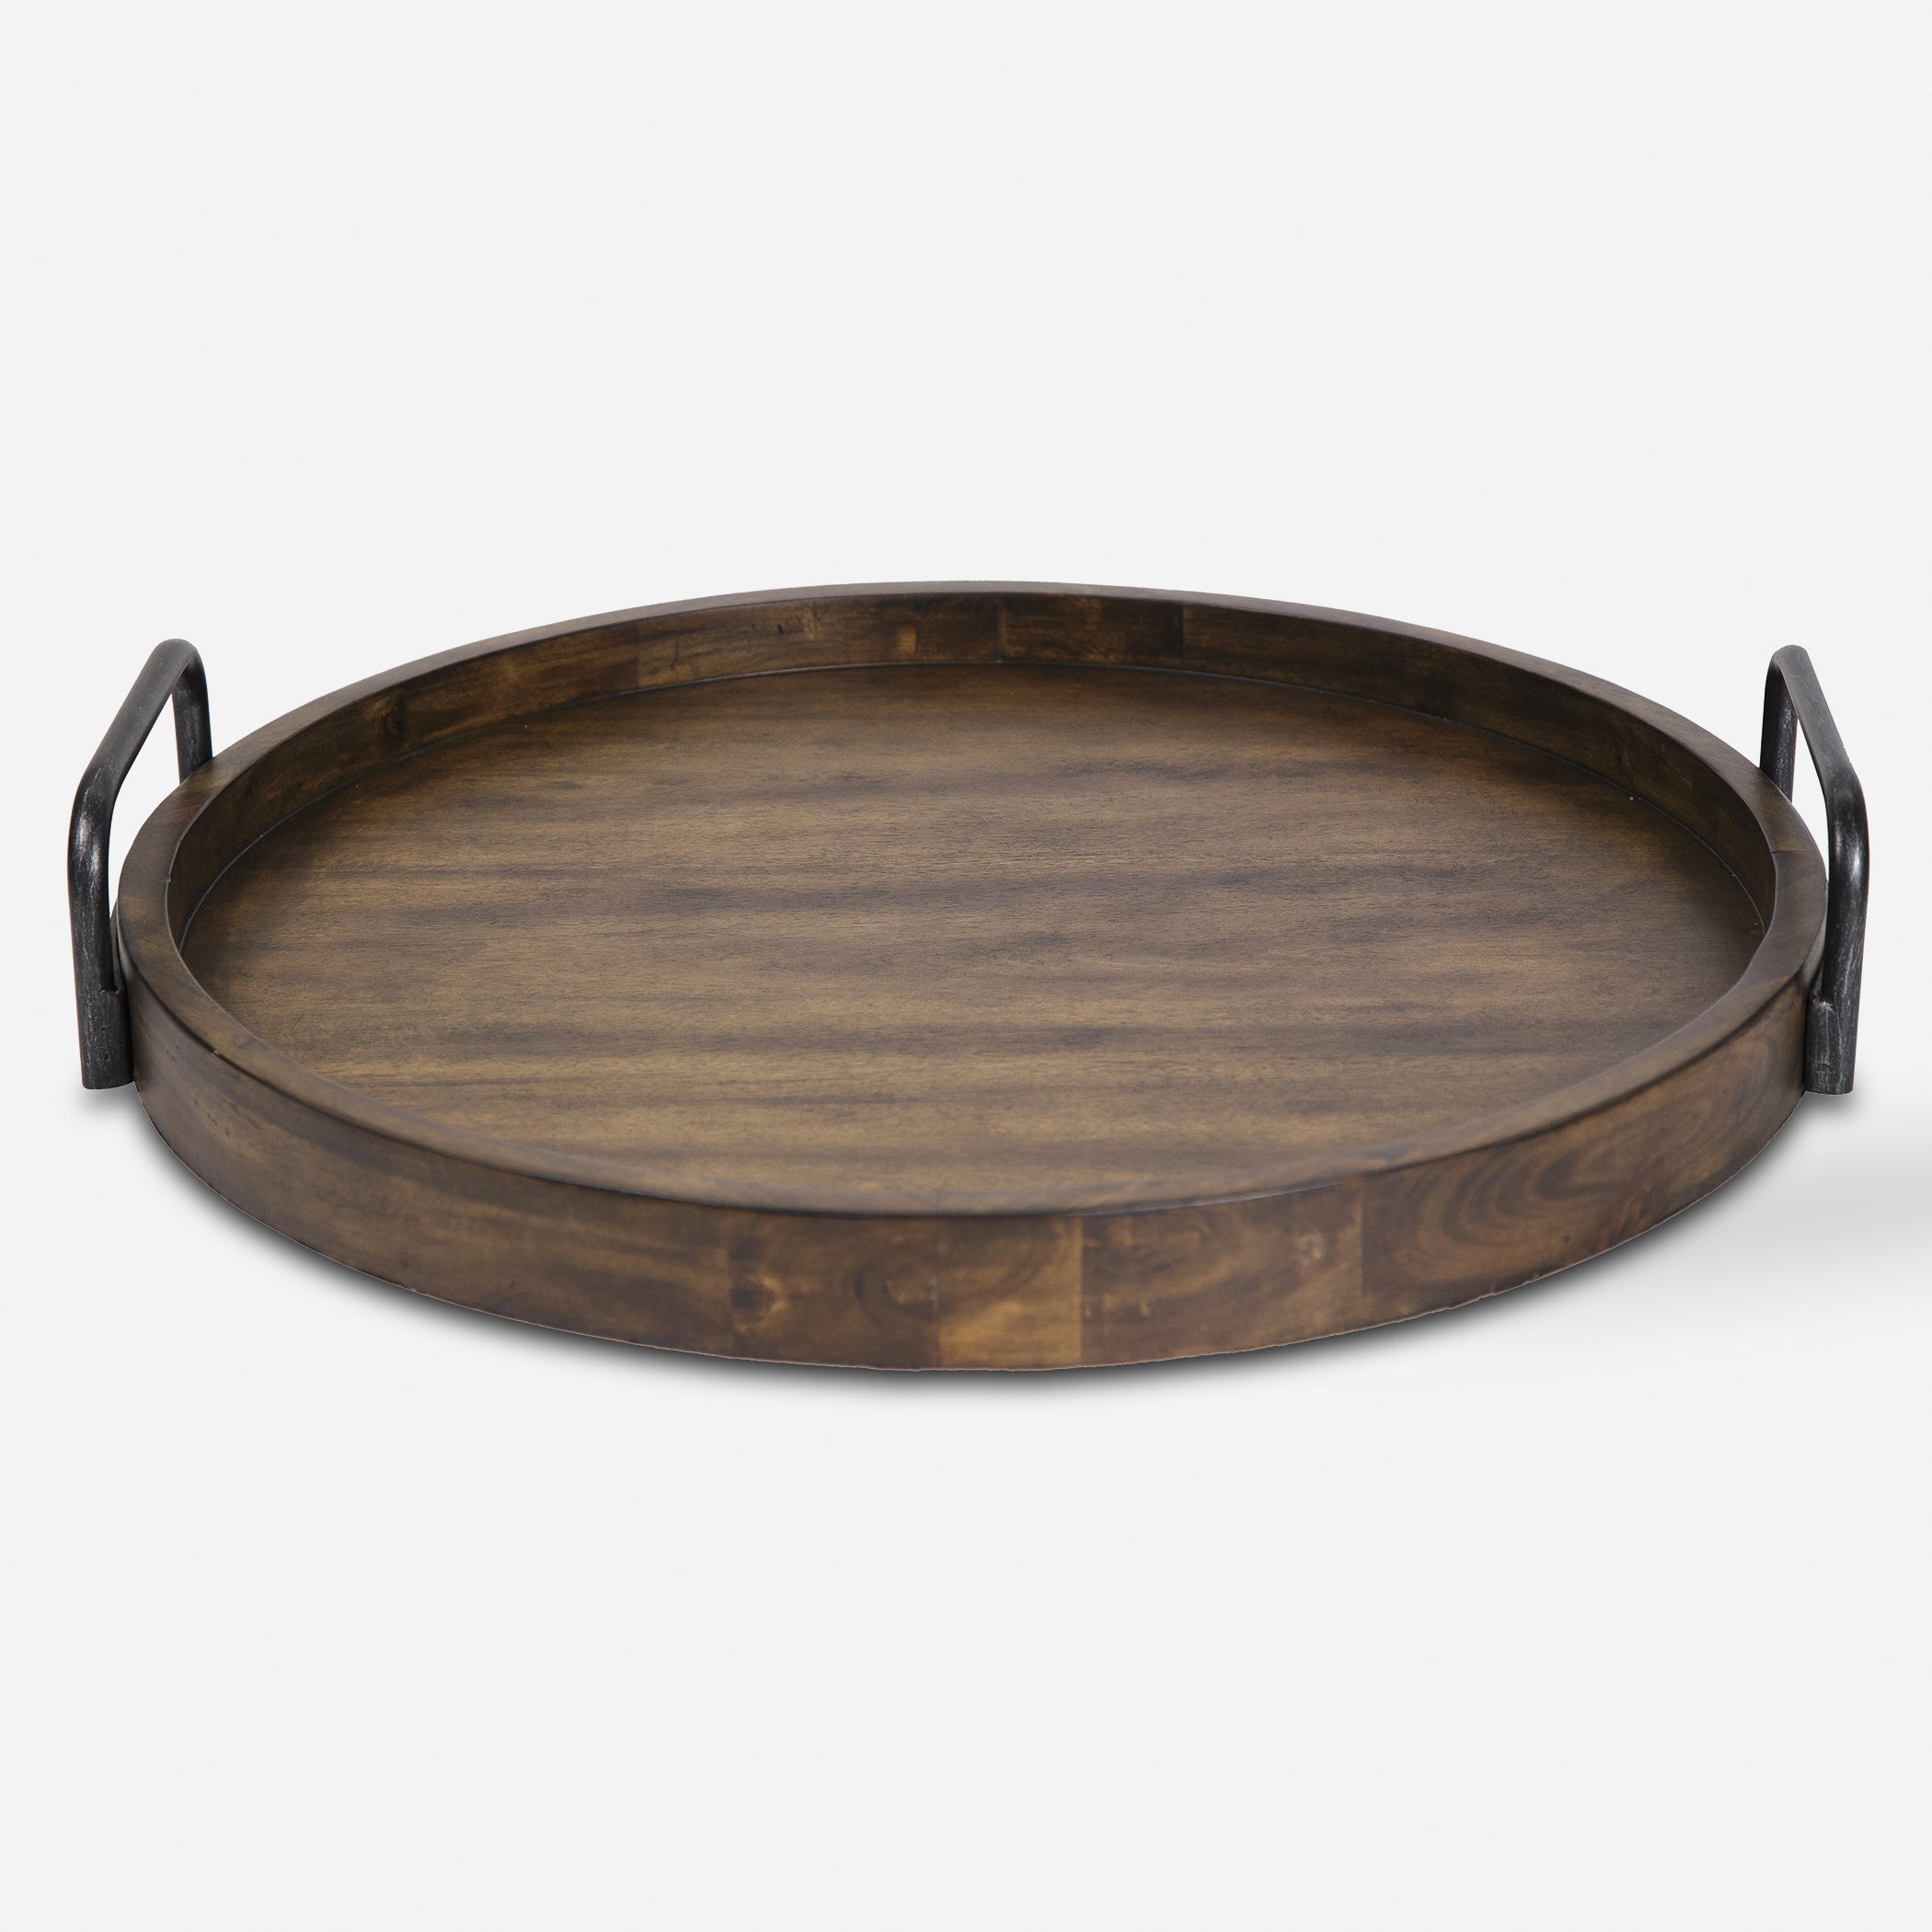 Uttermost Reine Decorative Bowls & Trays Decorative Bowls & Trays Uttermost   